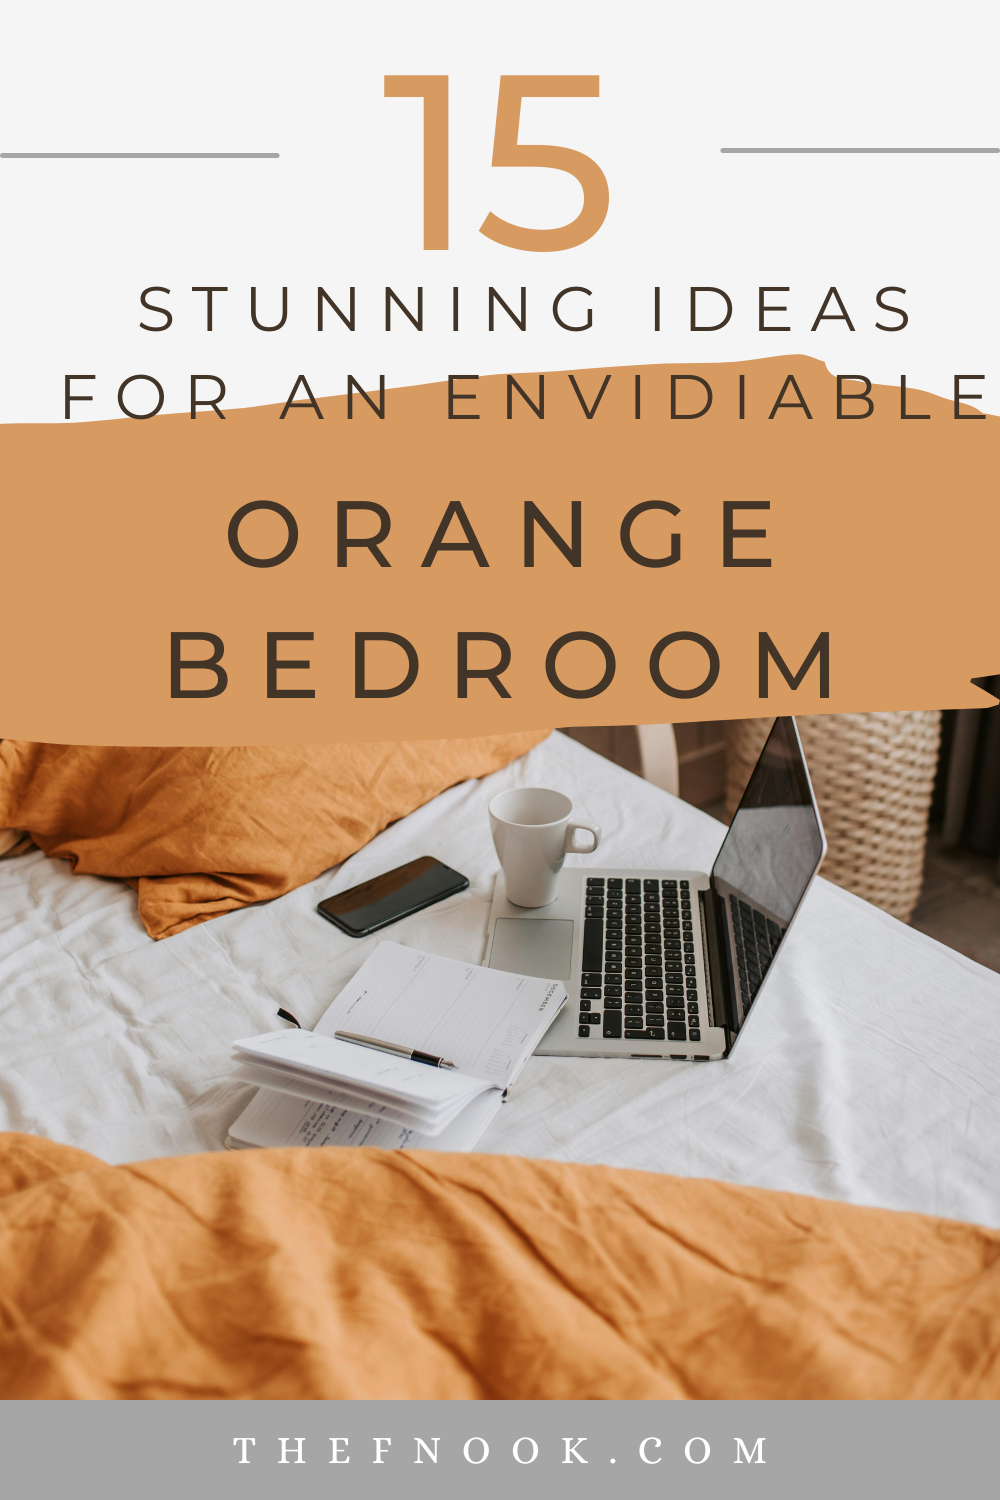 15 Stunning Ideas for an Envidiable Orange Bedroom